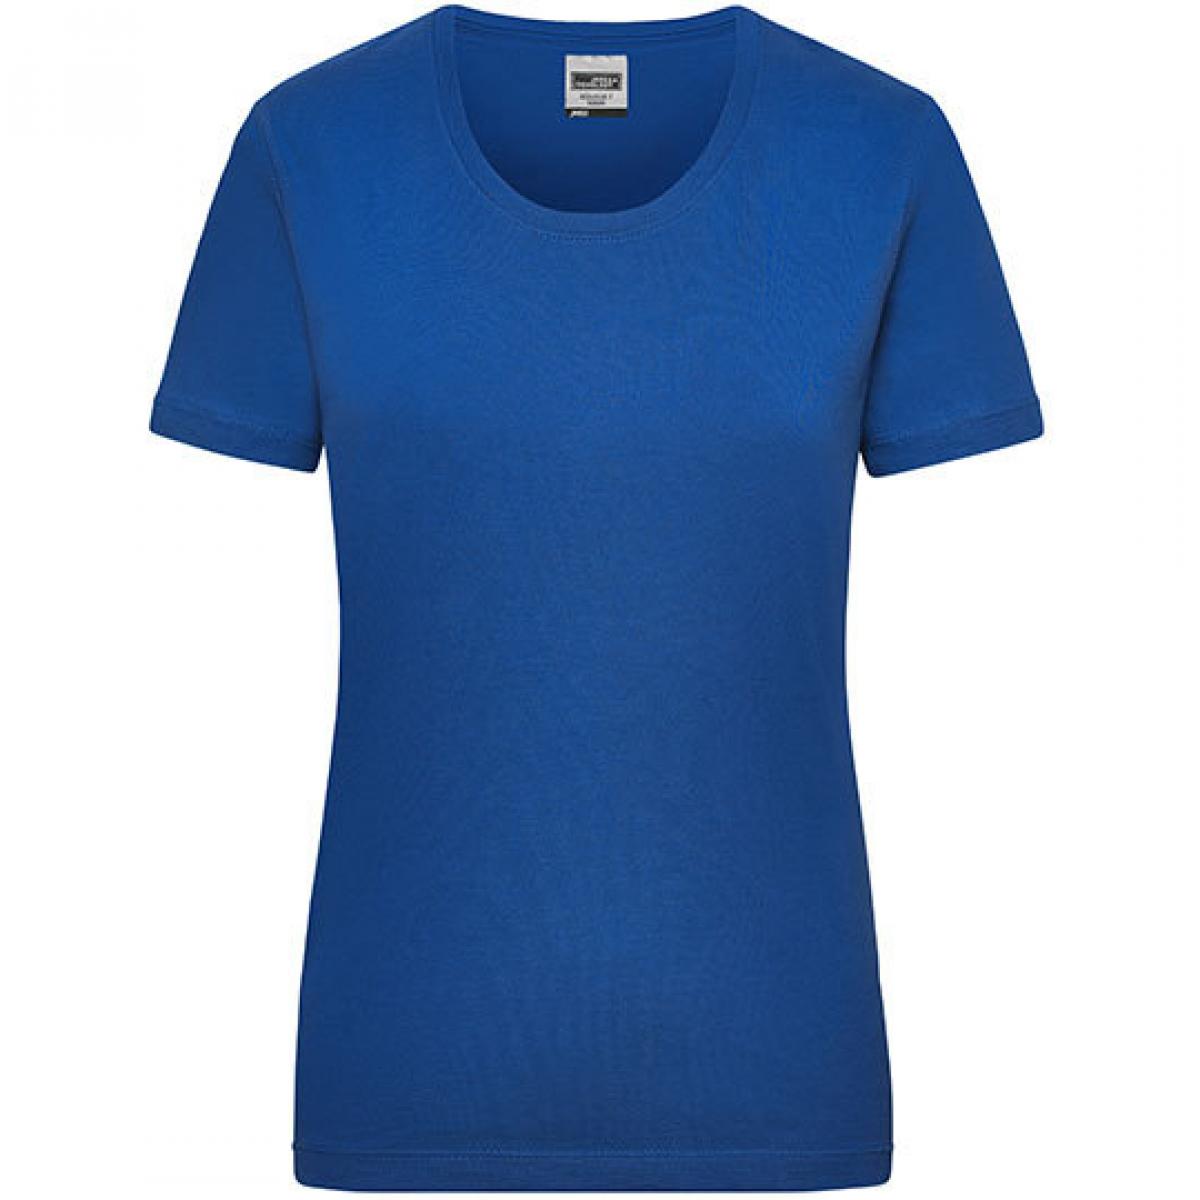 Hersteller: James+Nicholson Herstellernummer: JN 802 Artikelbezeichnung: Workwear-T Women Damen T-Shirt Farbe: Royal